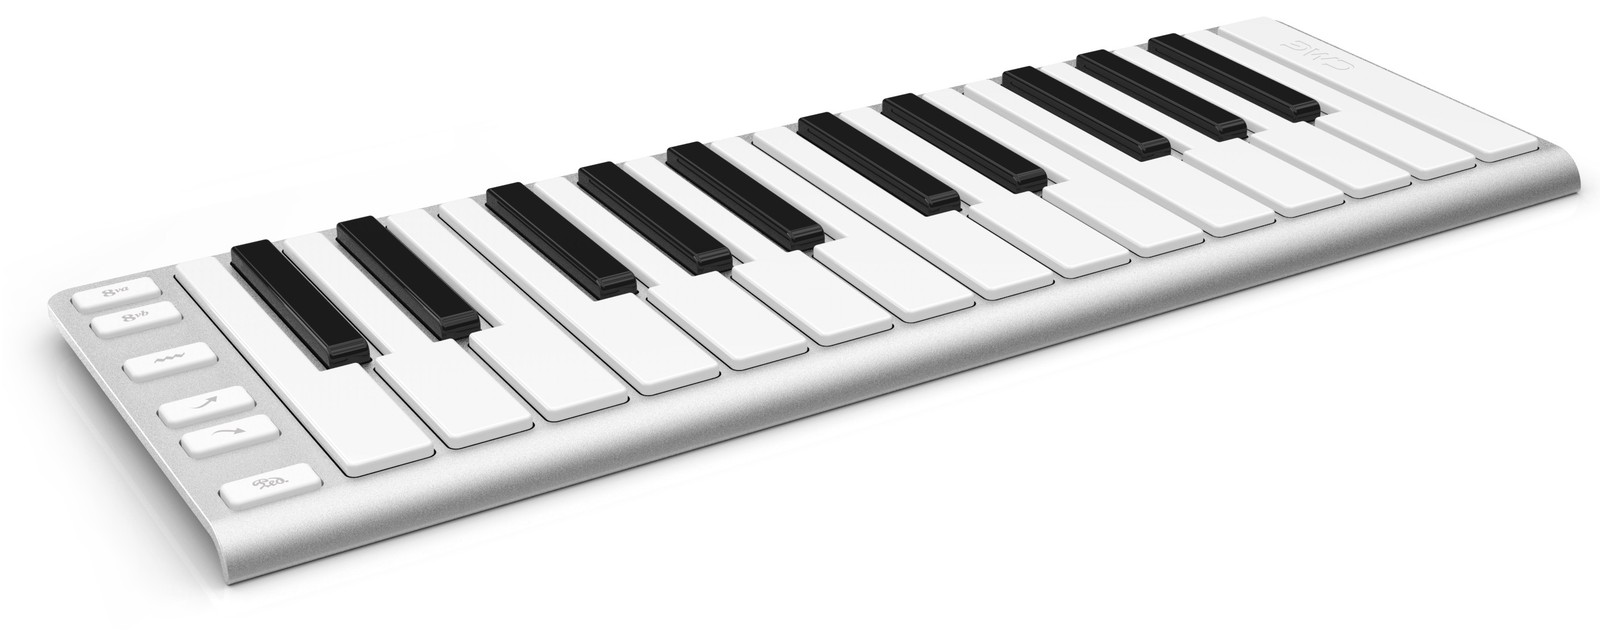 usb musical keyboard for mac